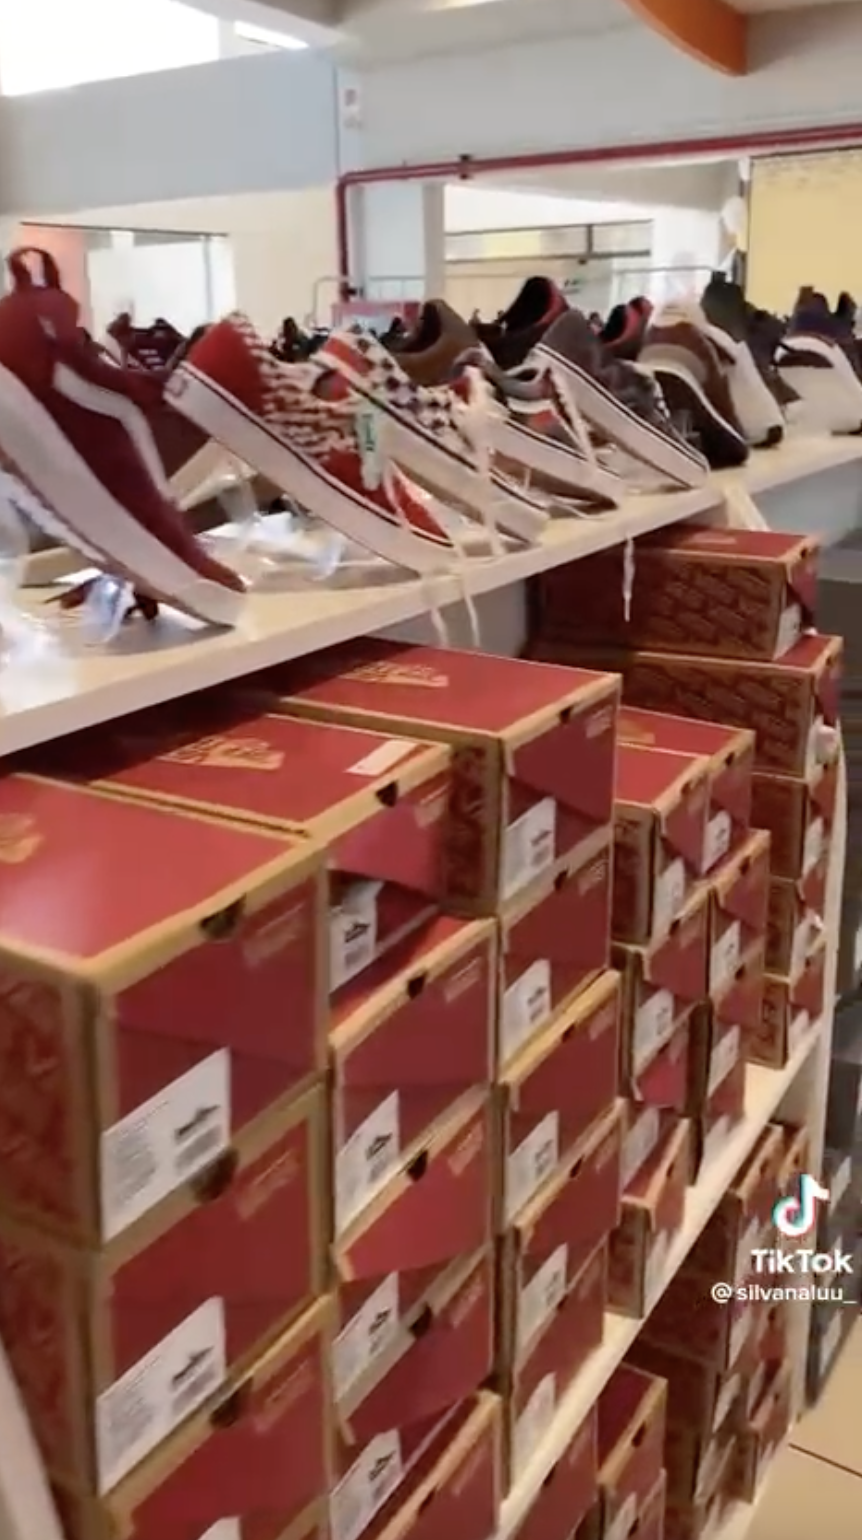 Almacén de San remata zapatillas importadas de Adidas, Nike más desde 75 soles